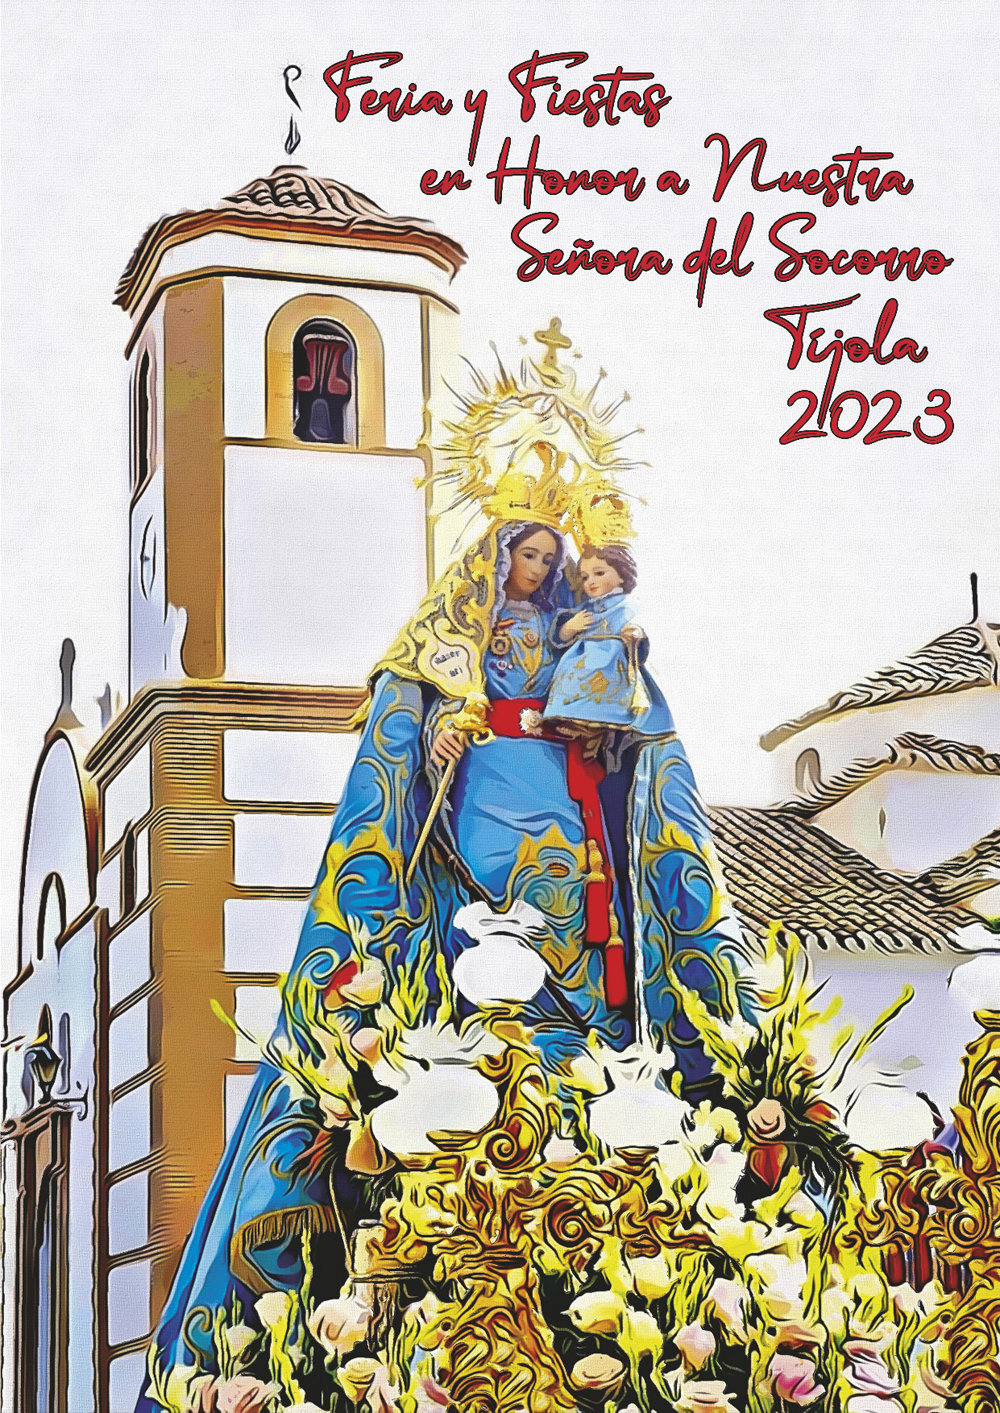 Imagen de la Portada del Programa de Fiestas de Verano de Tíjola 2023. Dibujo de la Virgen del Socorro con la Ermita al Fondo.